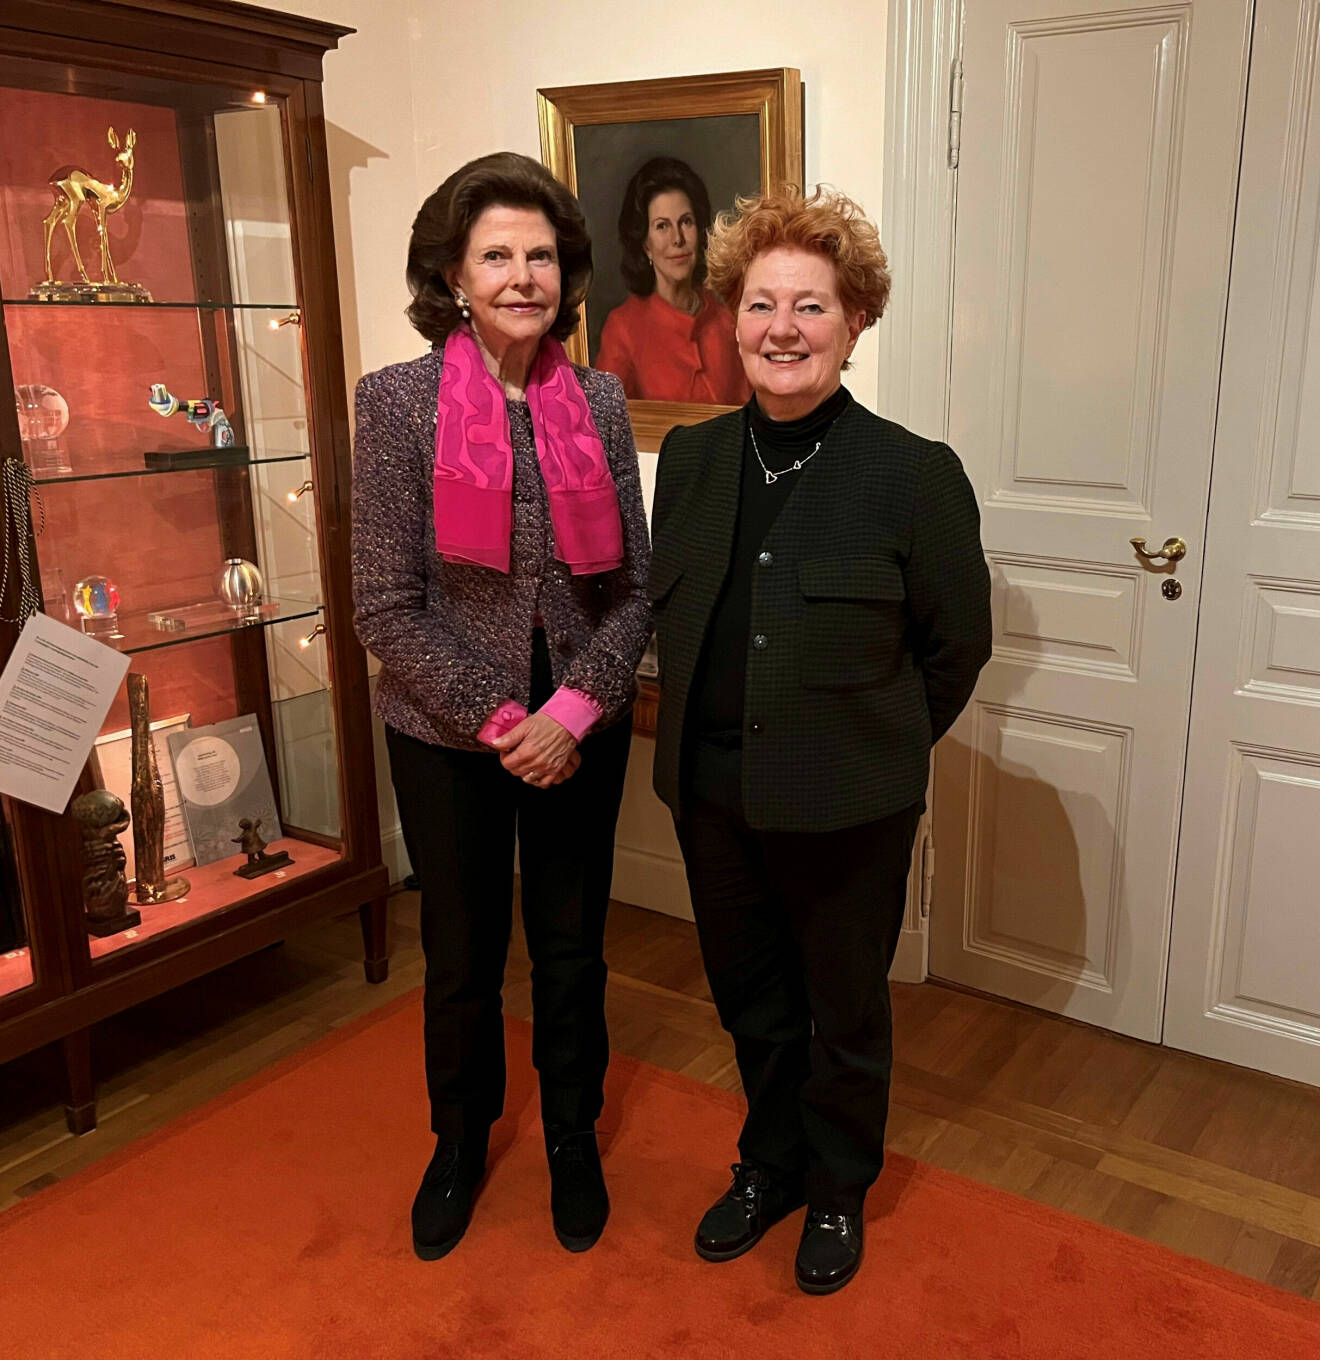 Drottning Silvia tillsammans med författaren Ingrid Thörnqvist fotograferade på Slottet, framför ett målat porträtt av drottningen.